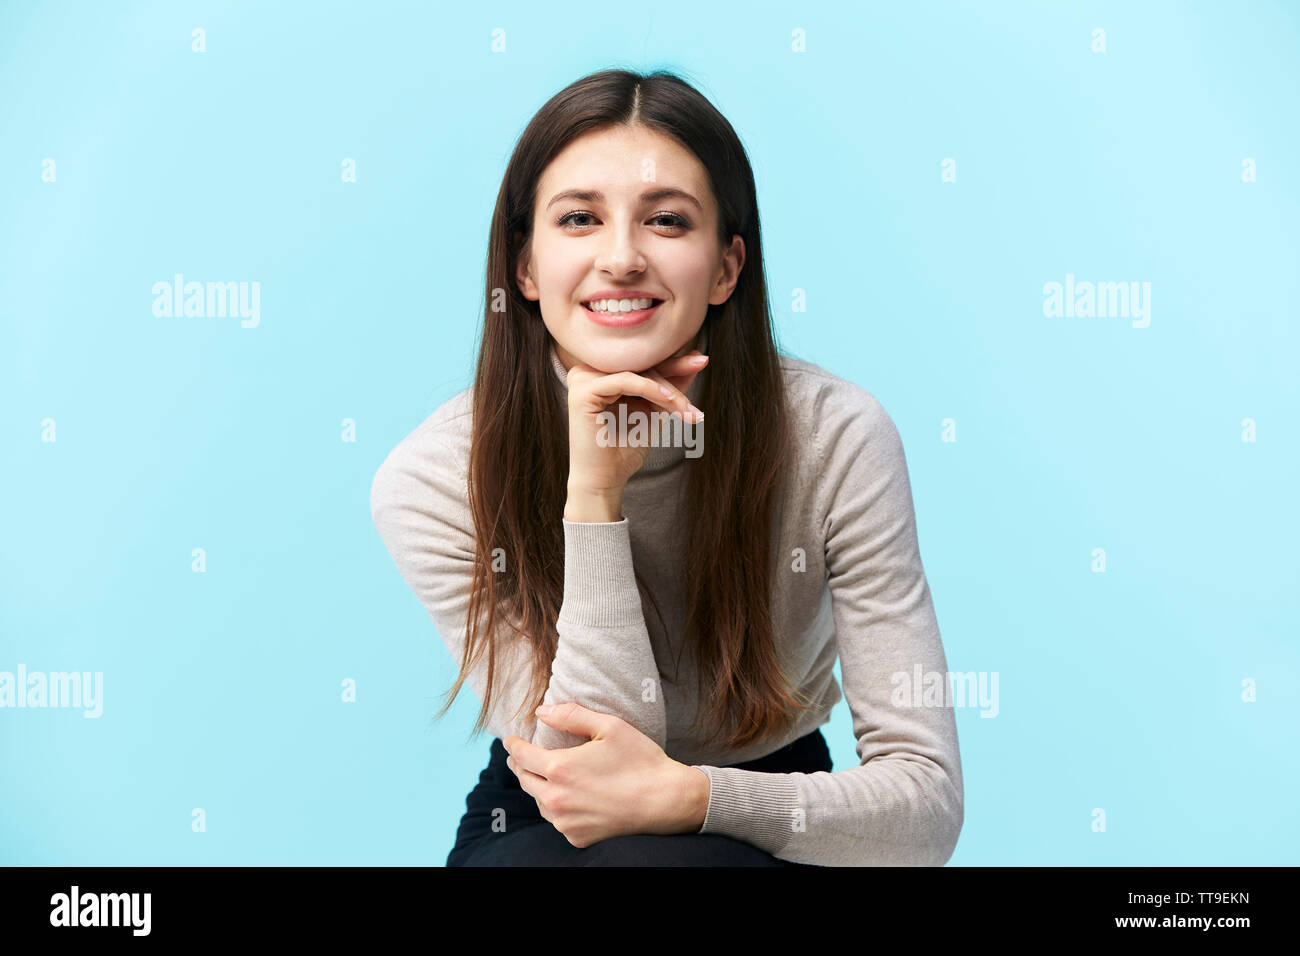 Ritratto di una giovane e bella donna caucasica, felice e sorridente, guardando la fotocamera, la mano sul mento e isolato su sfondo blu Foto Stock